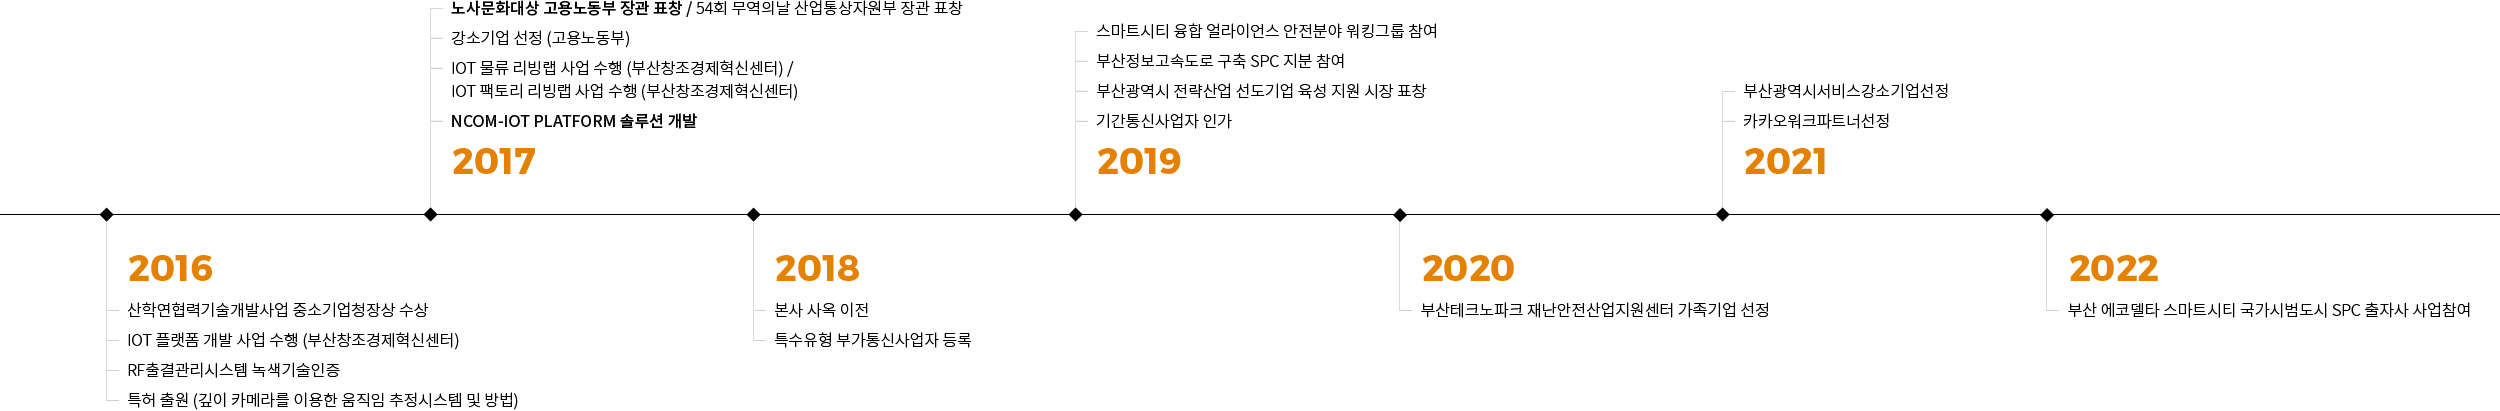 2016~2020